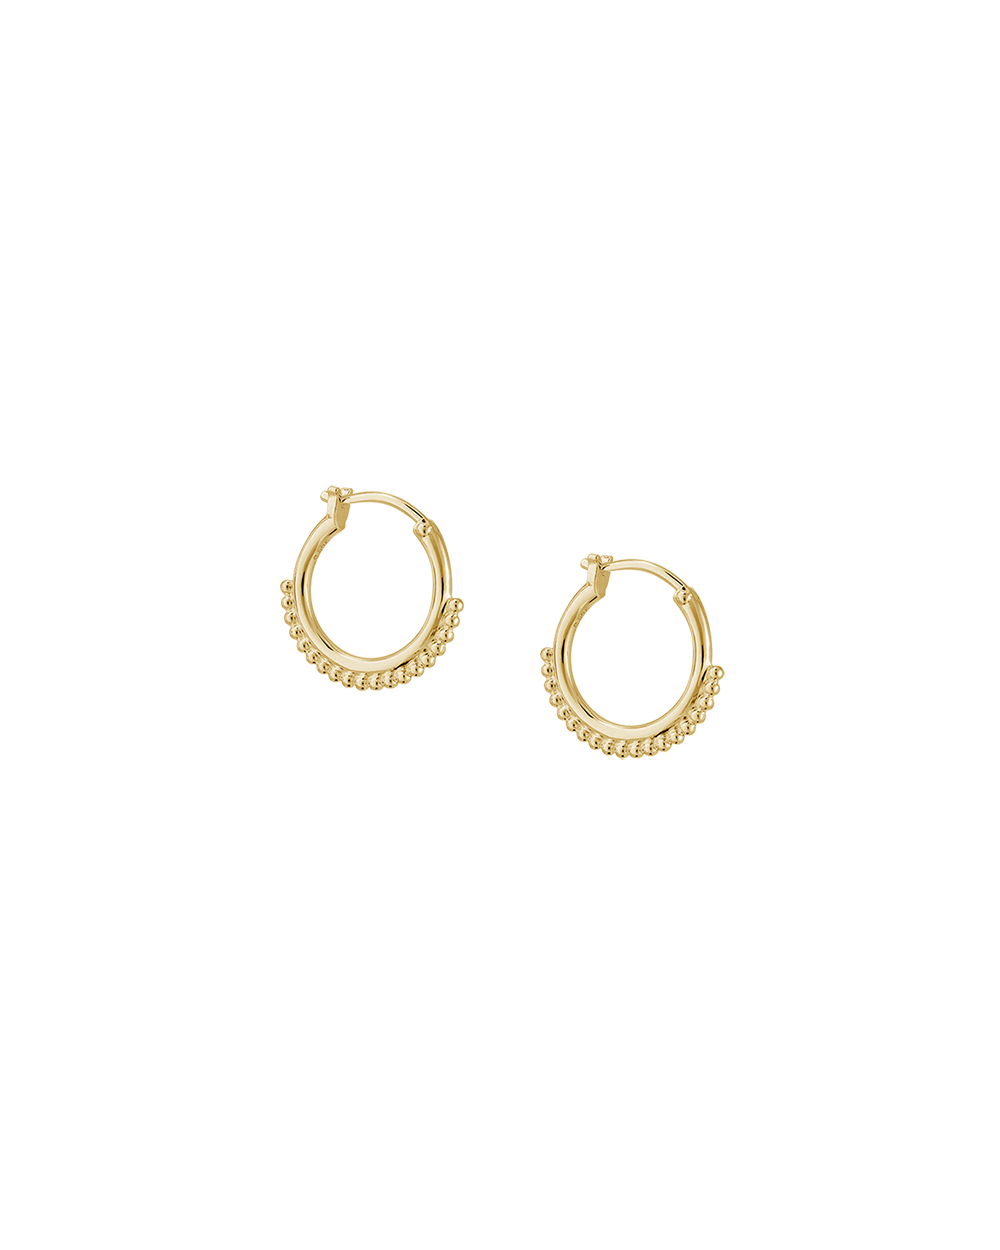 DETAIL HOOP EARRINGS (18K GOLD PLATED) - IMAGE 6